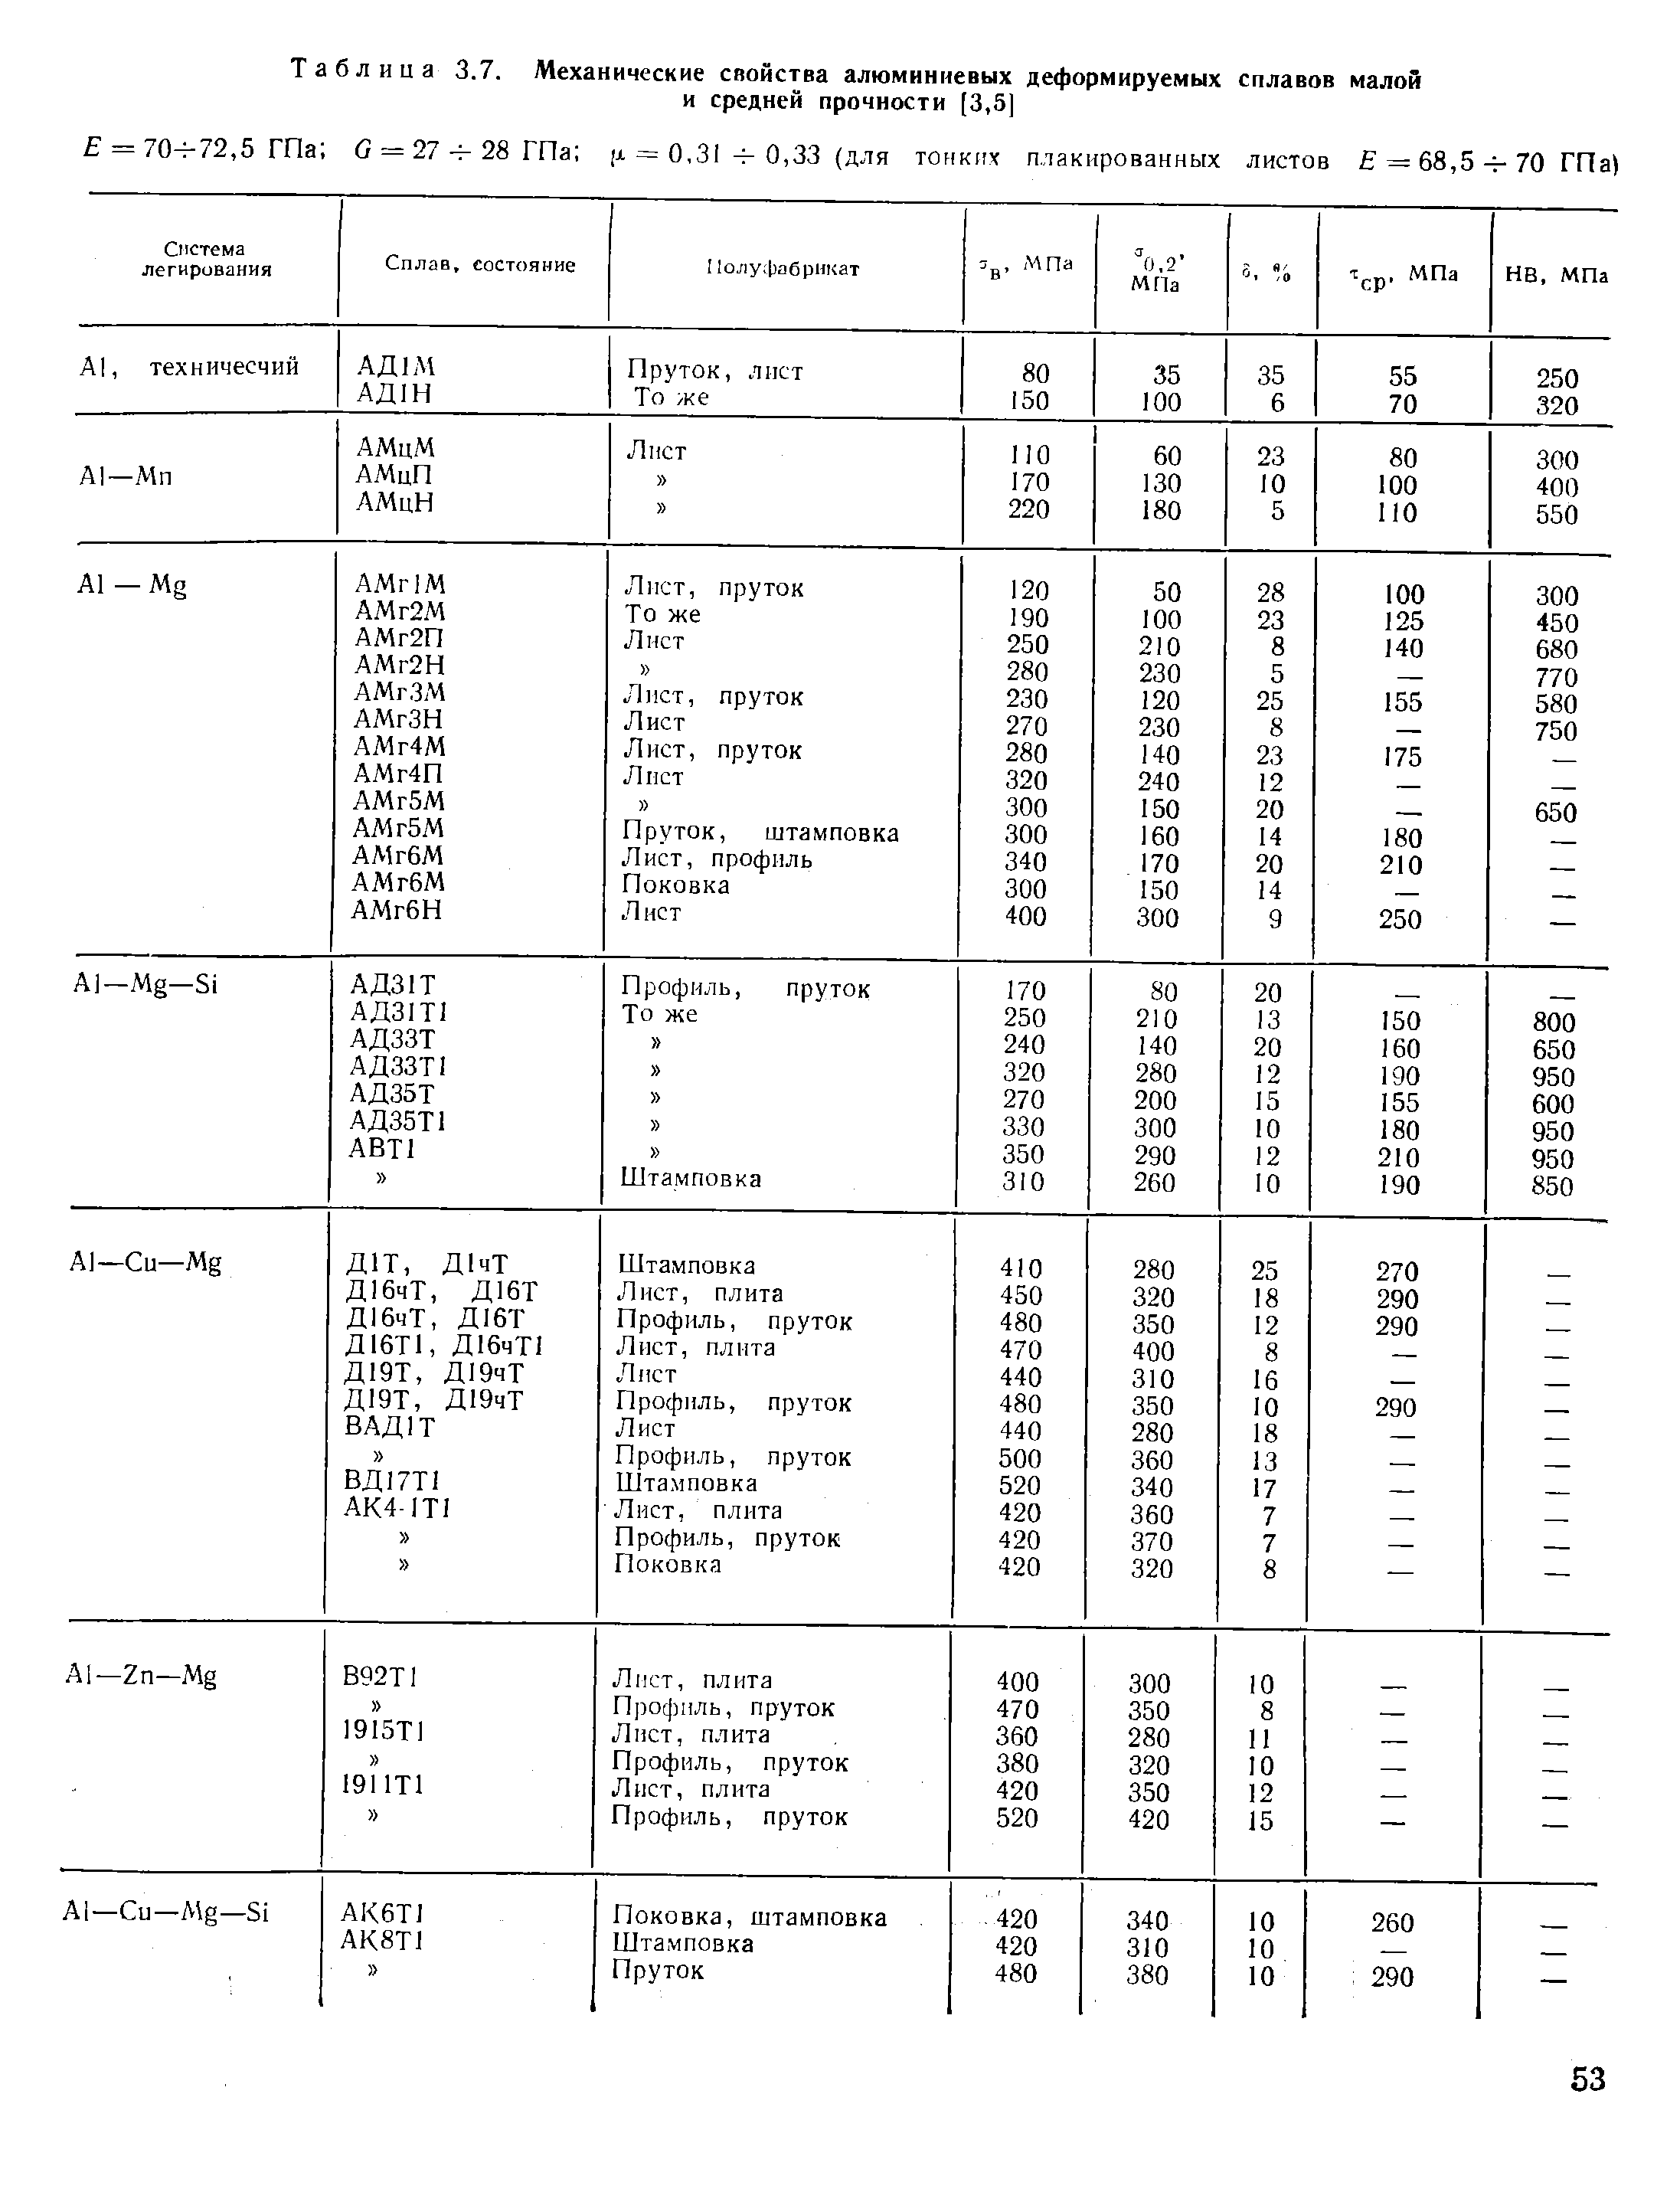 Таблица сплавов алюминия